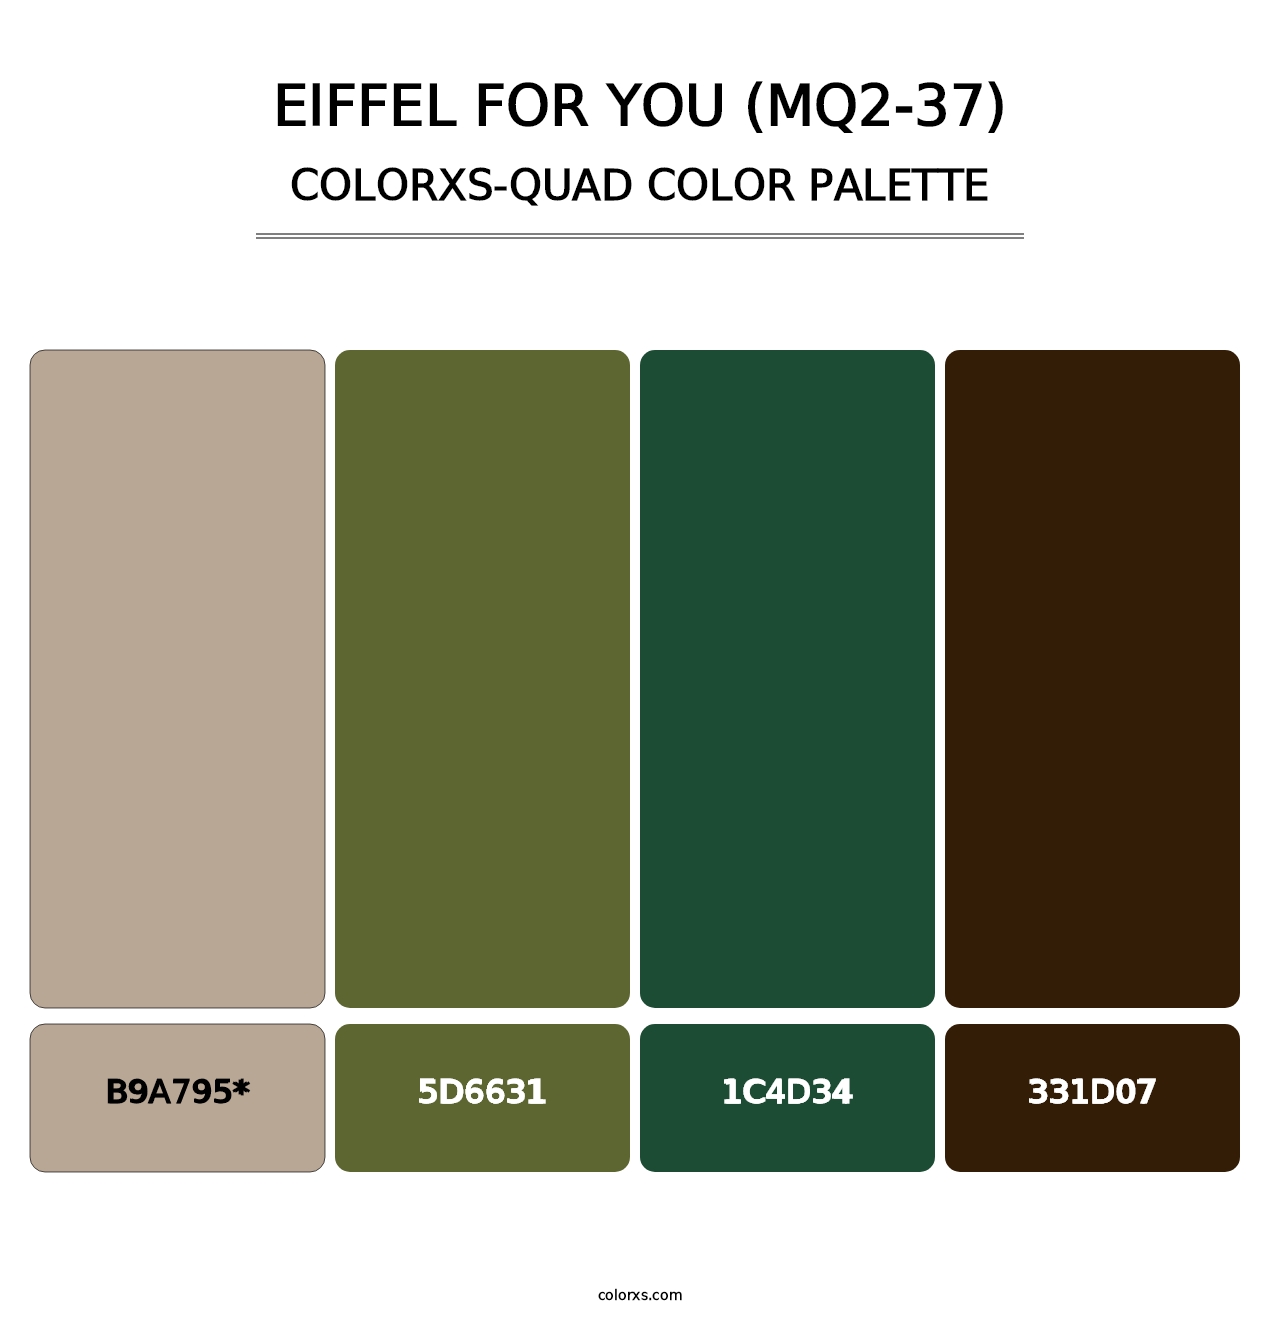 Eiffel For You (MQ2-37) - Colorxs Quad Palette